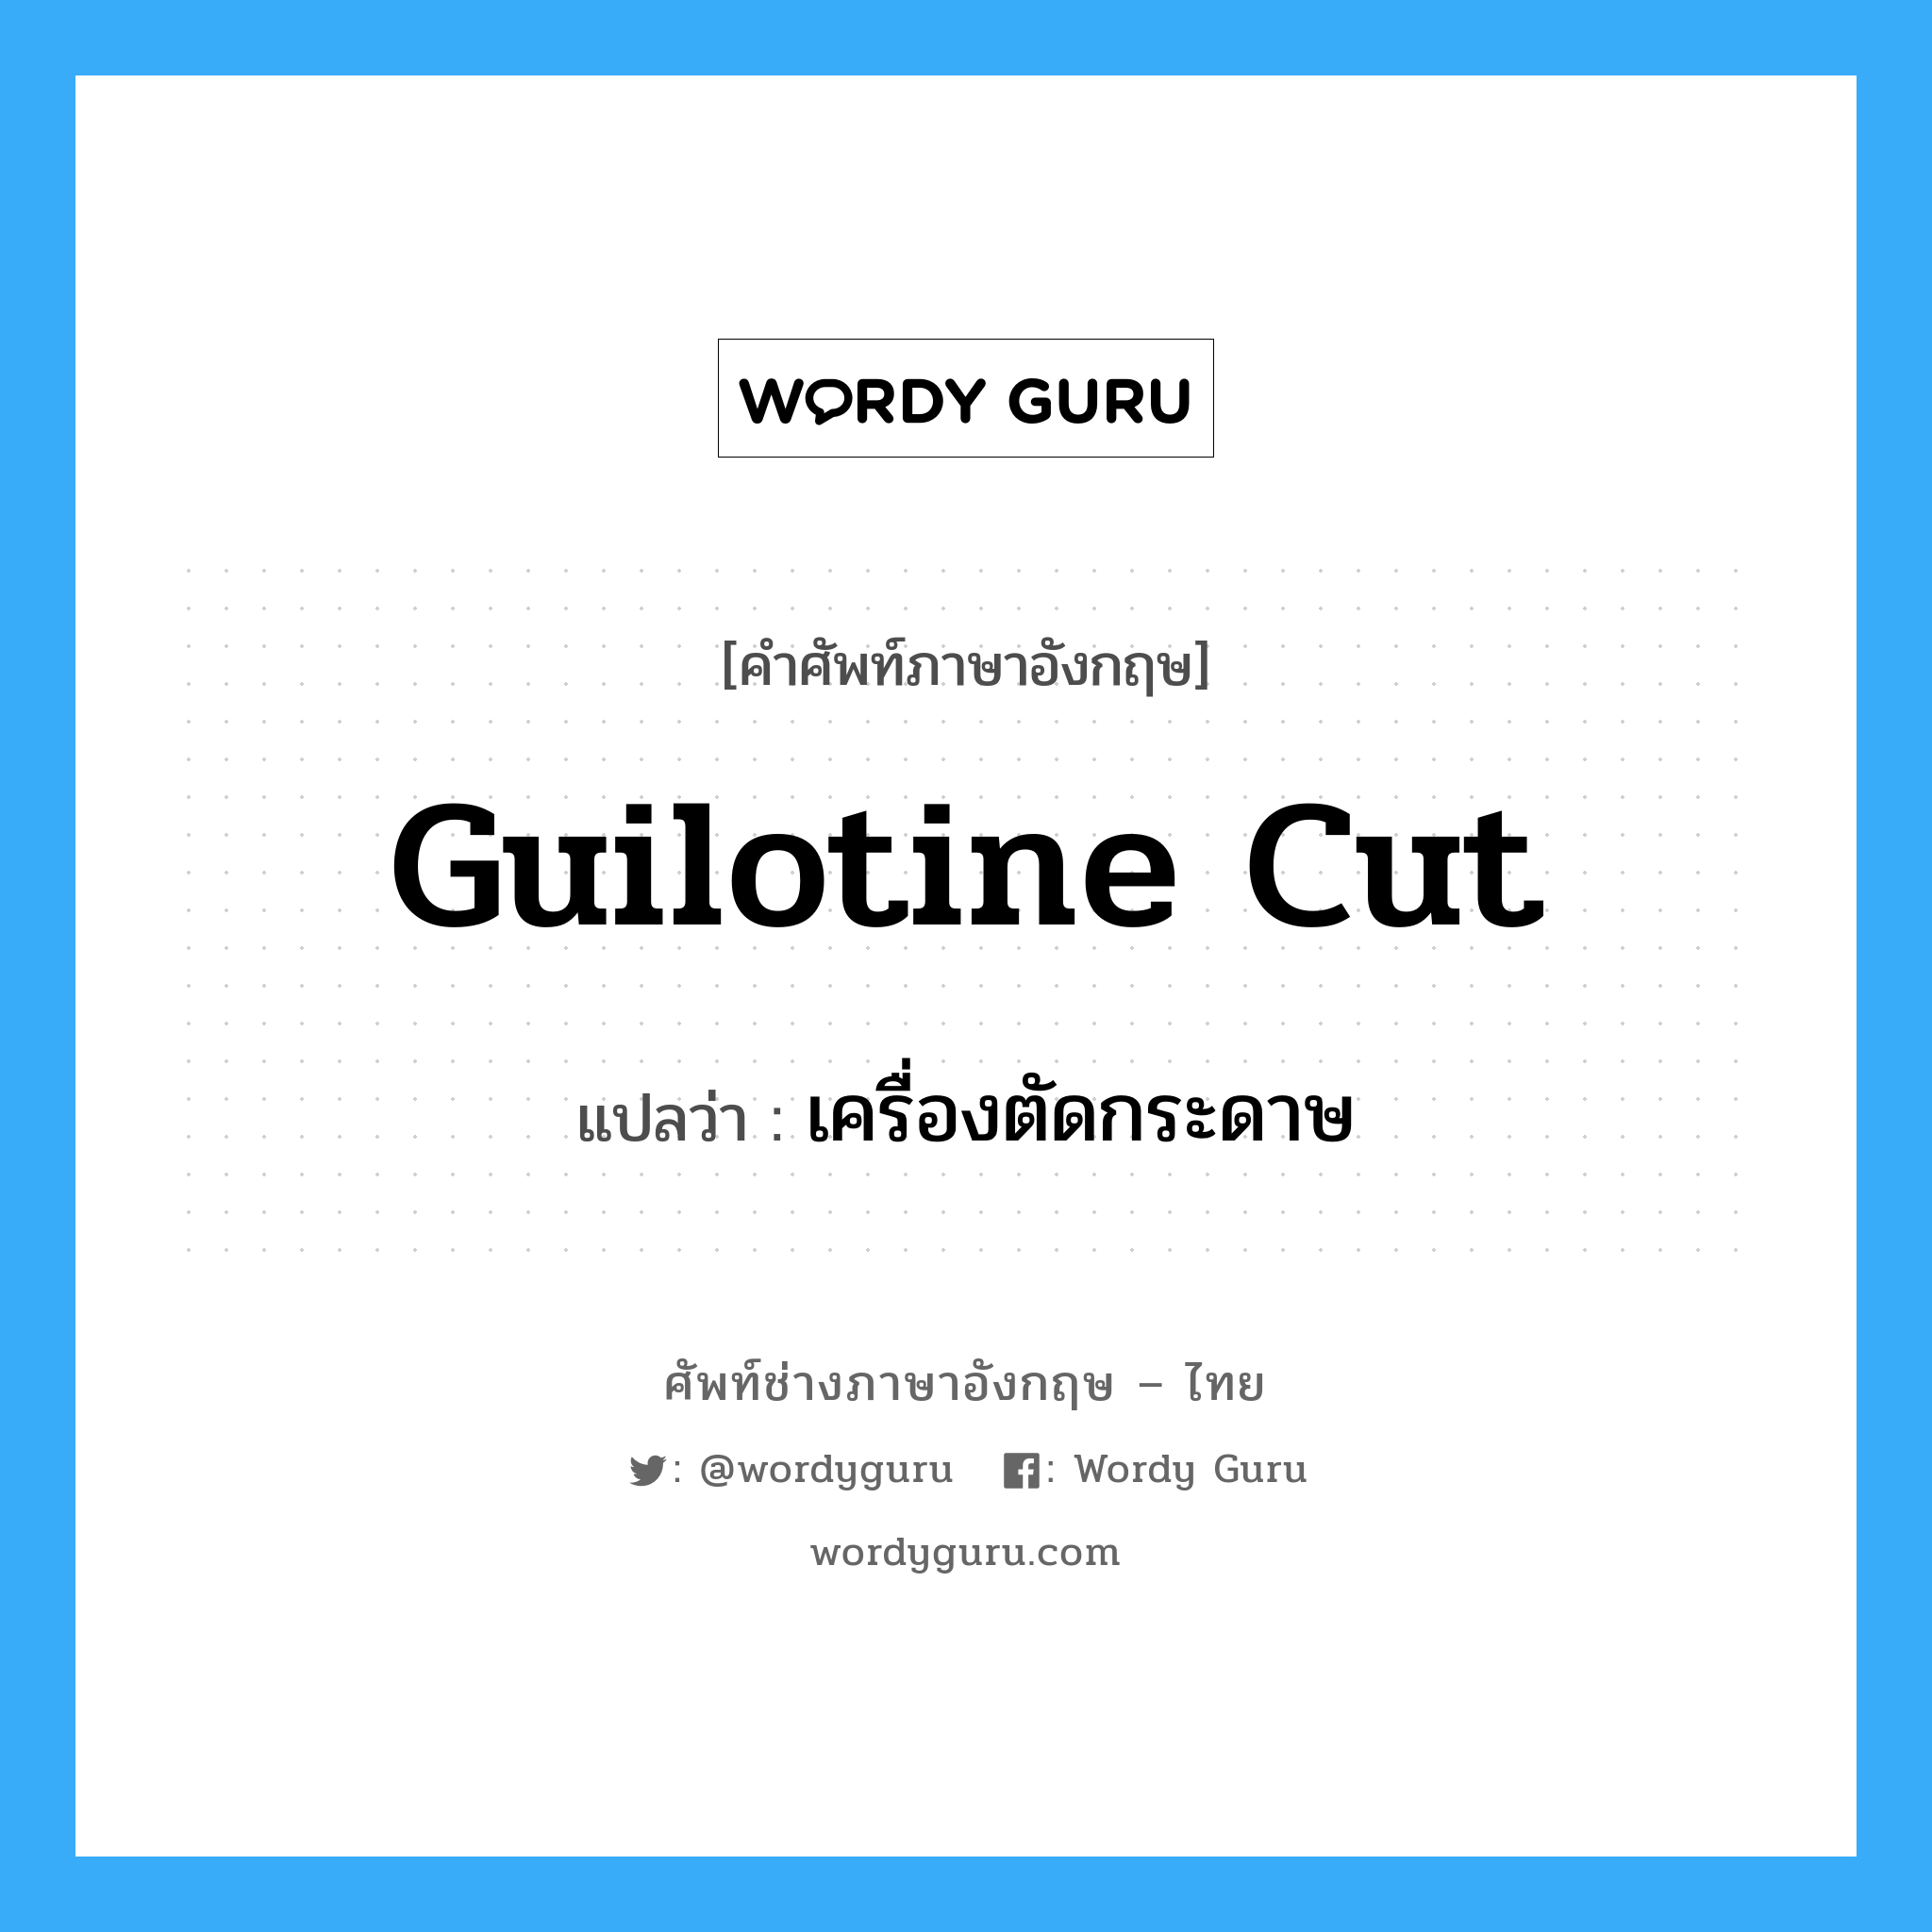 guilotine cut แปลว่า?, คำศัพท์ช่างภาษาอังกฤษ - ไทย guilotine cut คำศัพท์ภาษาอังกฤษ guilotine cut แปลว่า เครื่องตัดกระดาษ